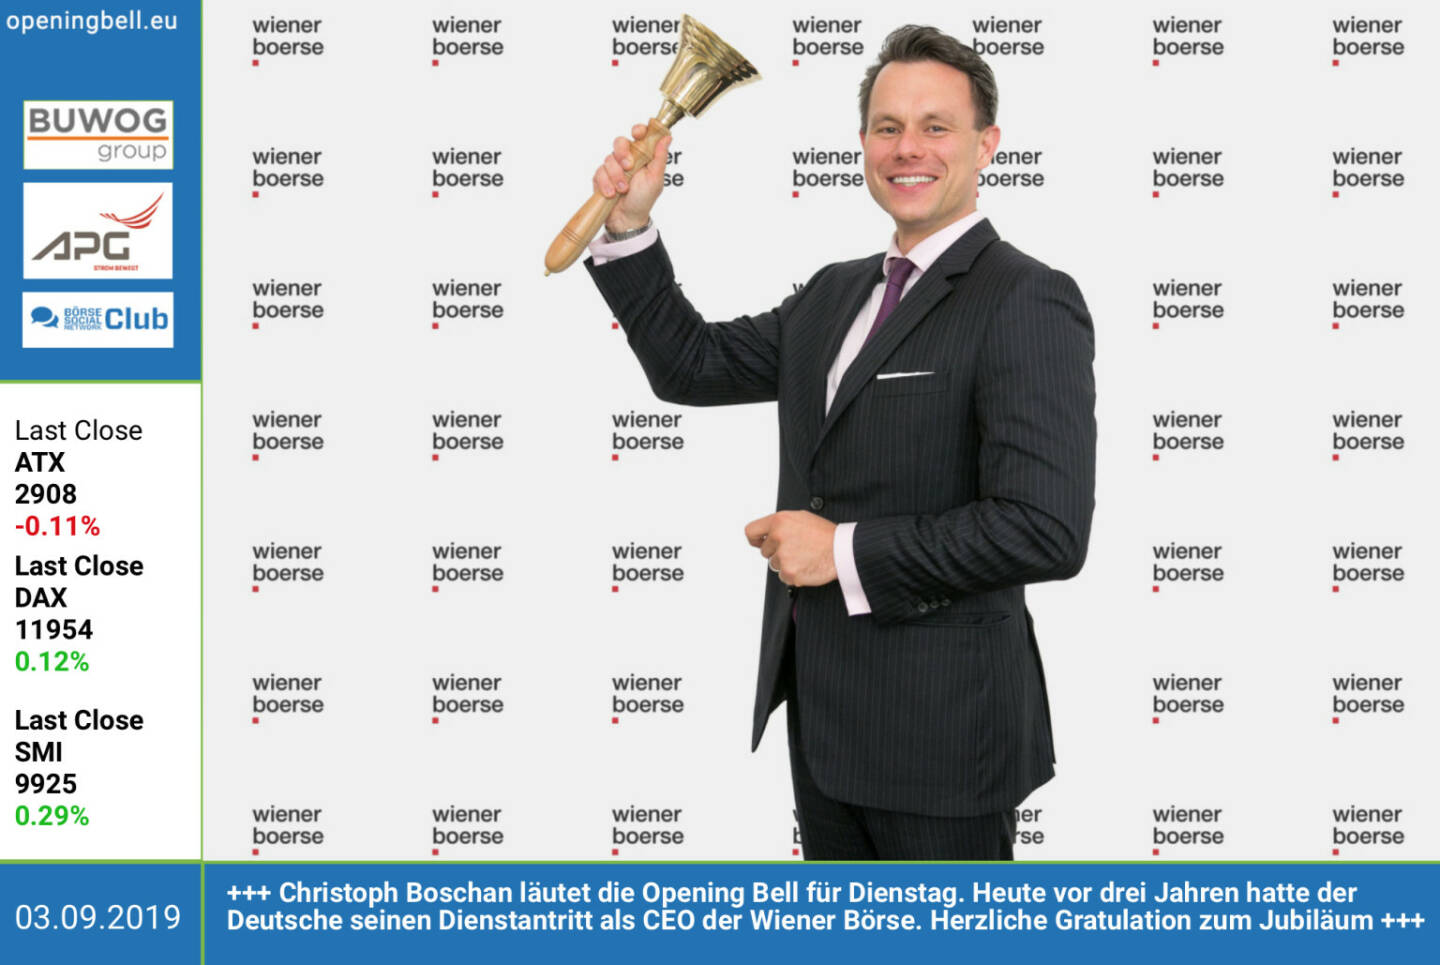 3.9.: Christoph Boschan läutet die Opening Bell für Dienstag. Heute vor drei Jahren hatte der Deutsche seinen Dienstantritt als CEO der Wiener Börse. Herzliche Gratulation zum Jubiläum und ... well done http://www.wienerborse.at